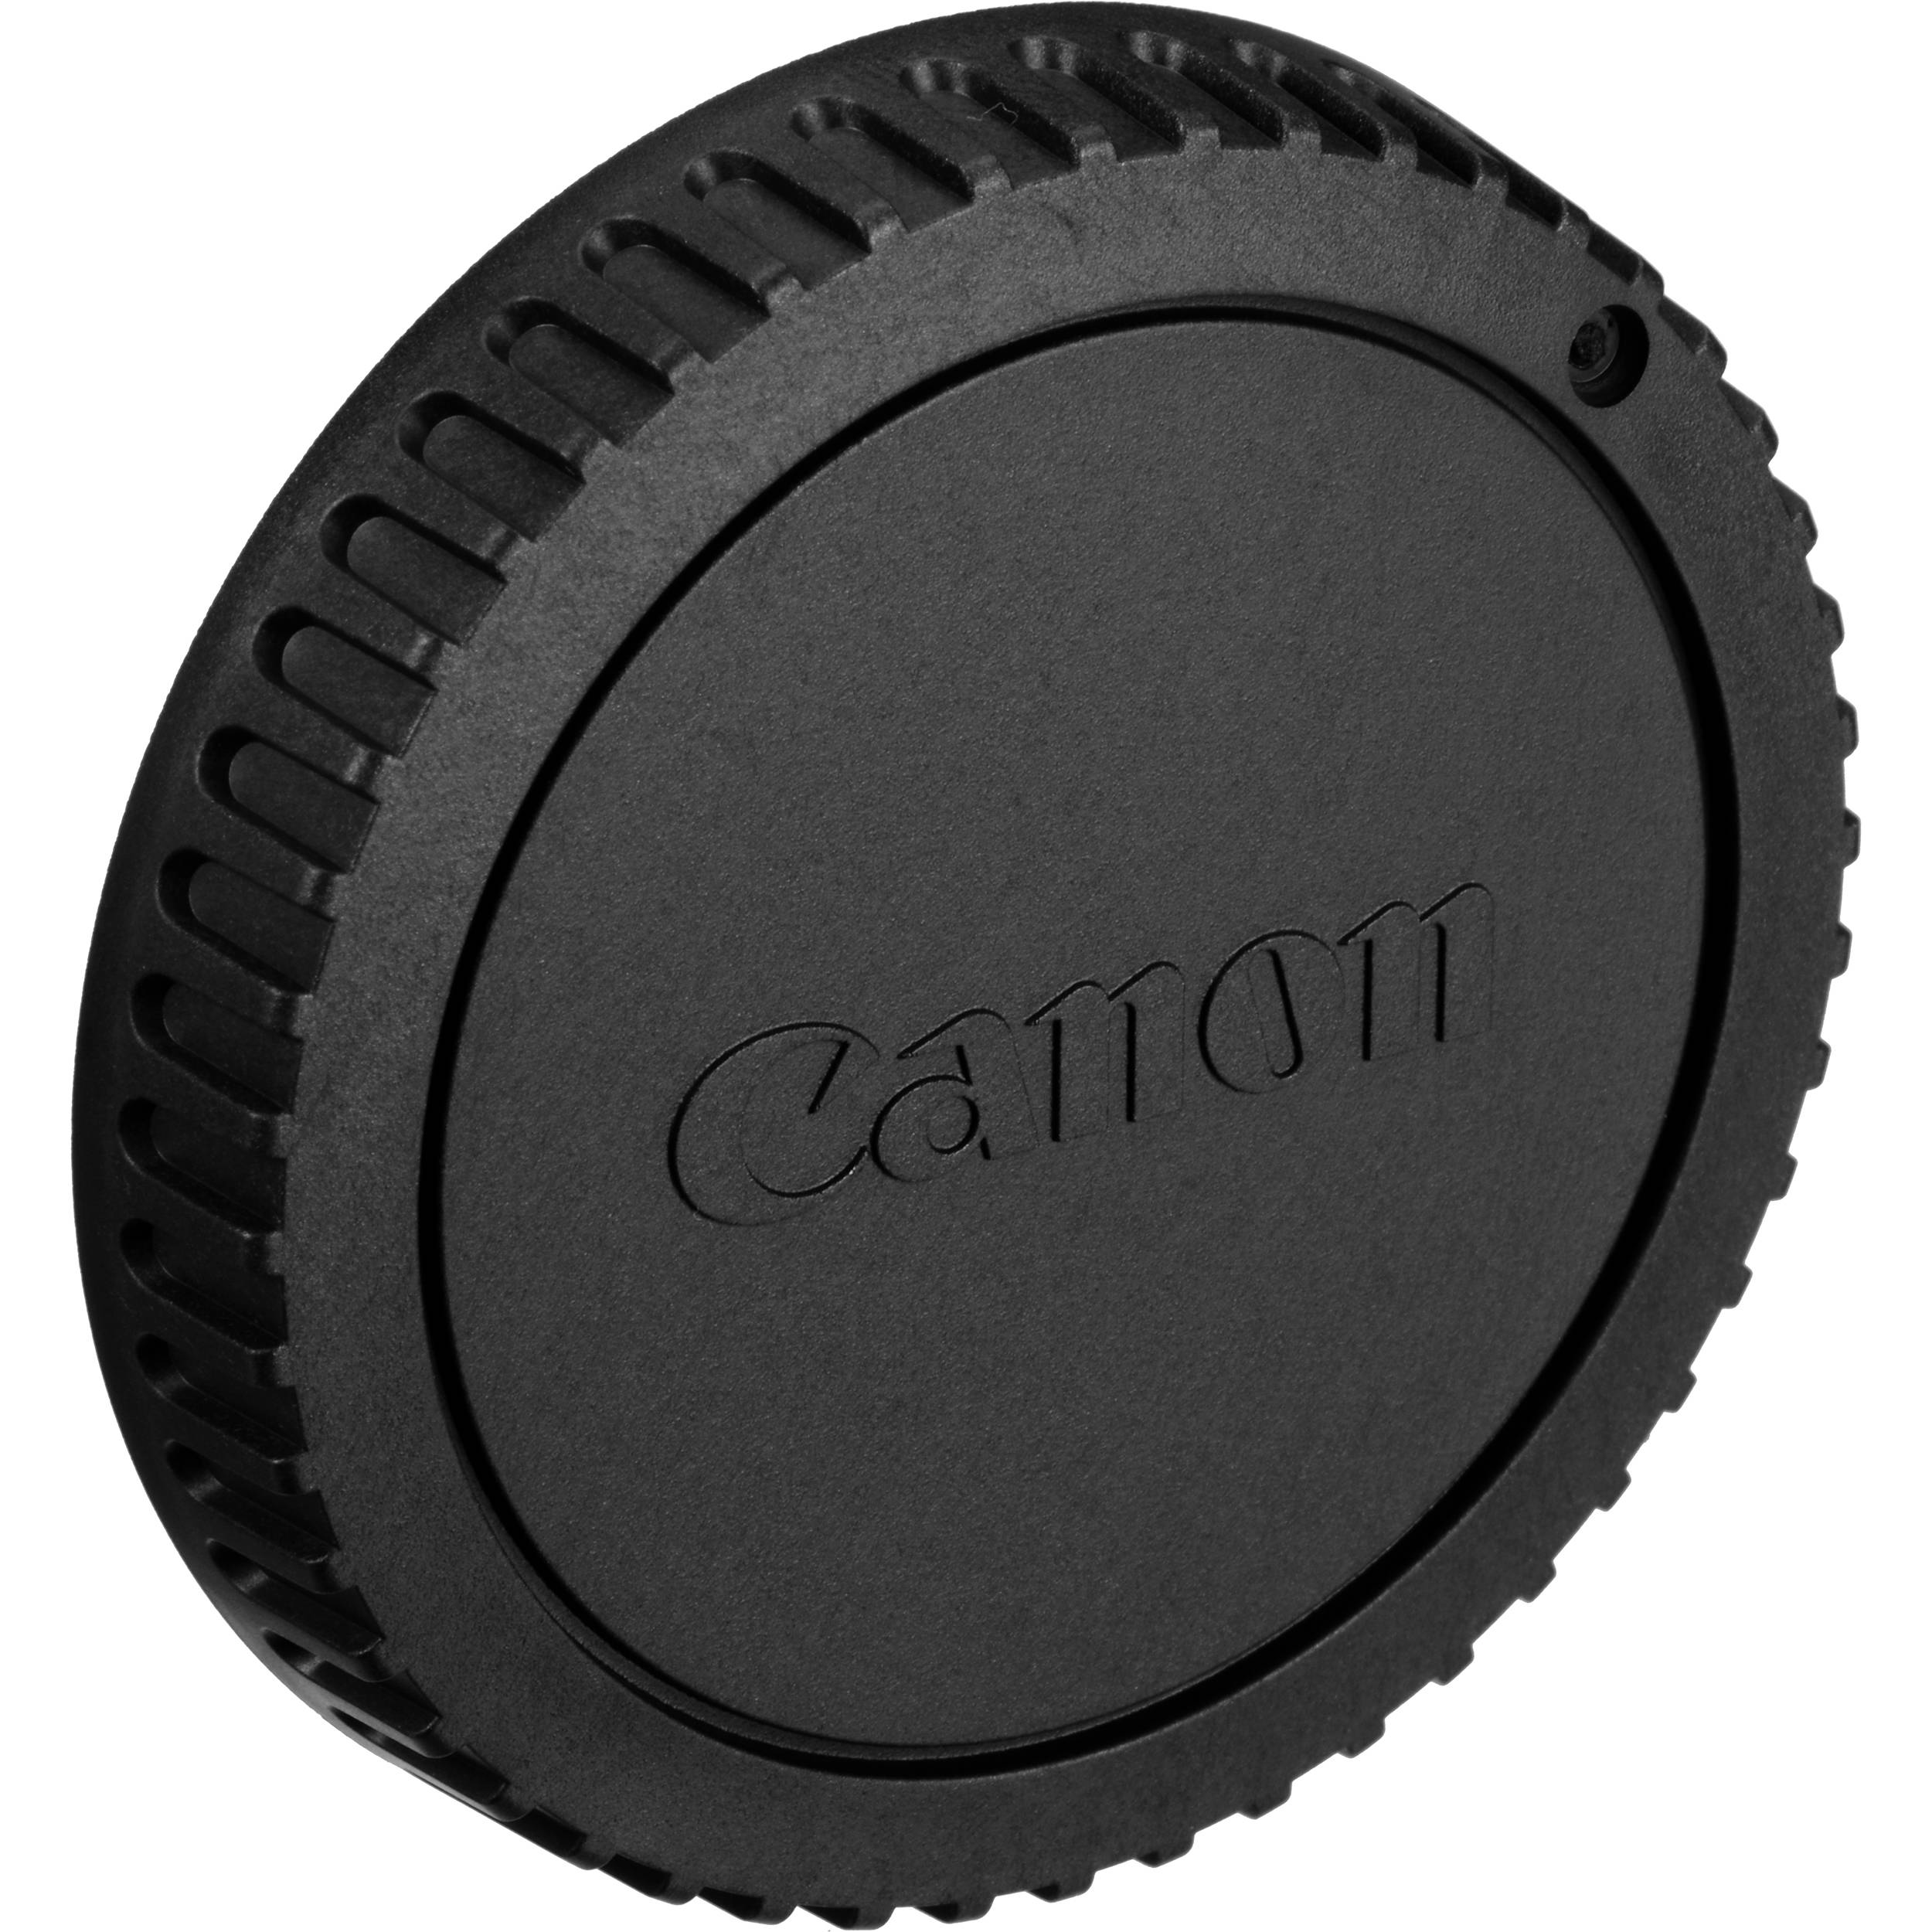 Canon Teleconverter Cap E II Canon Rear Lens Cap